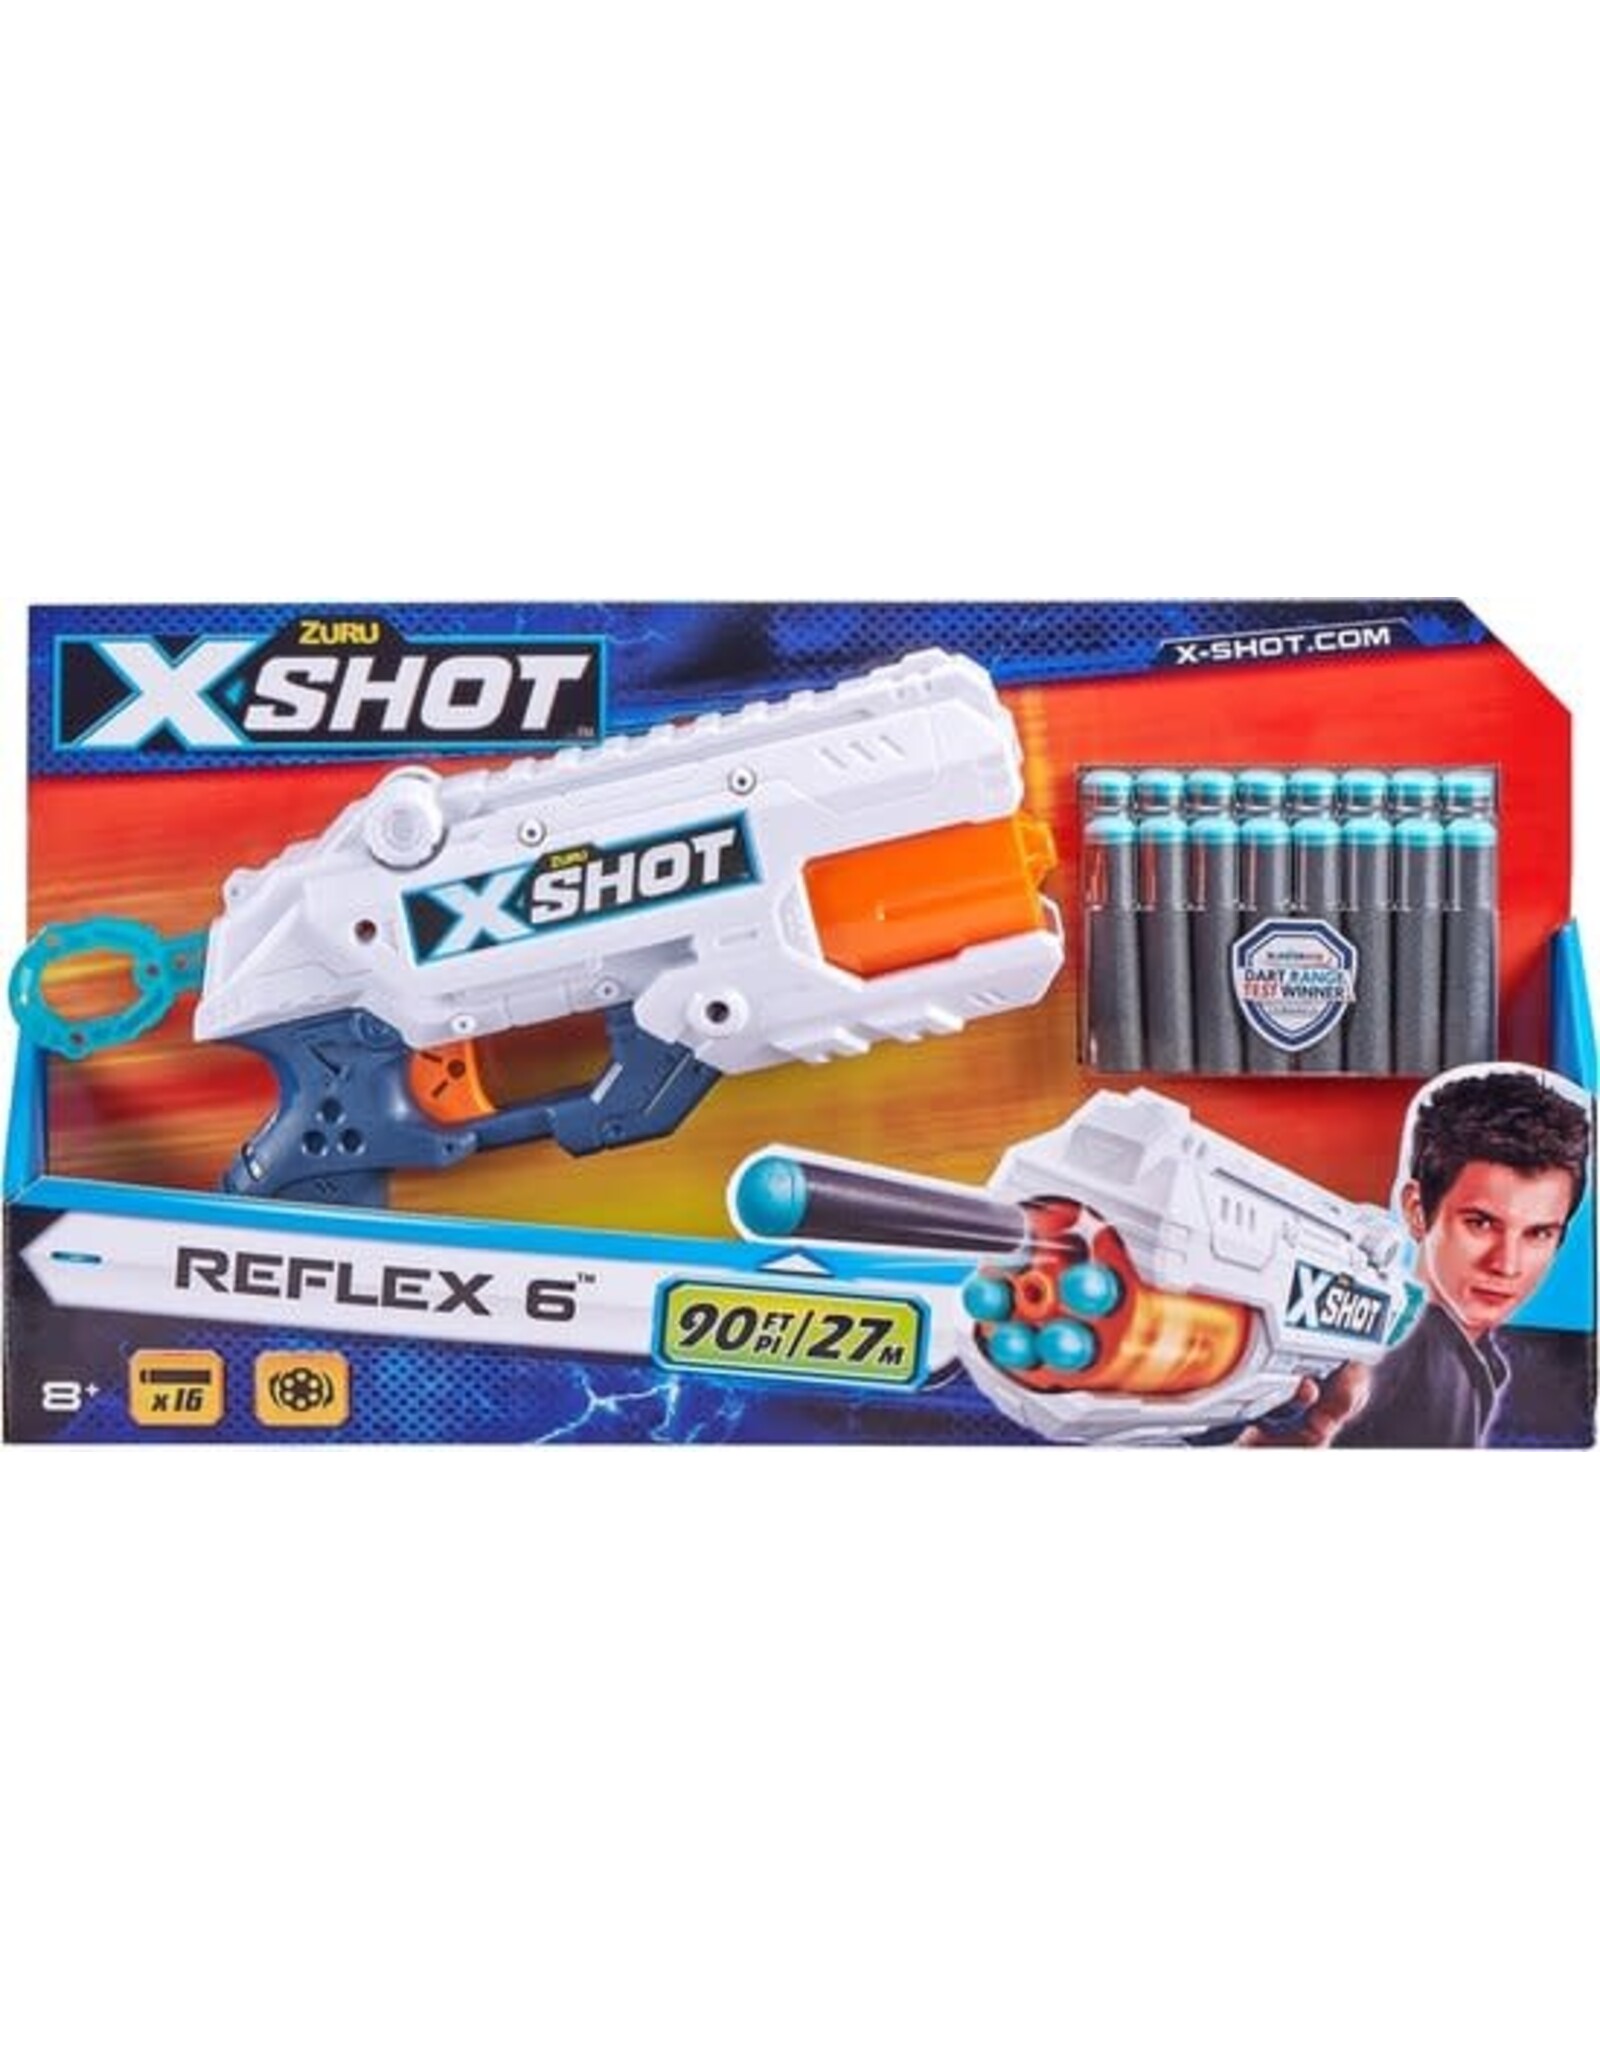 ZURU ZURU X-Shot - Excel Reflex 6 Blaster + 16 Darts